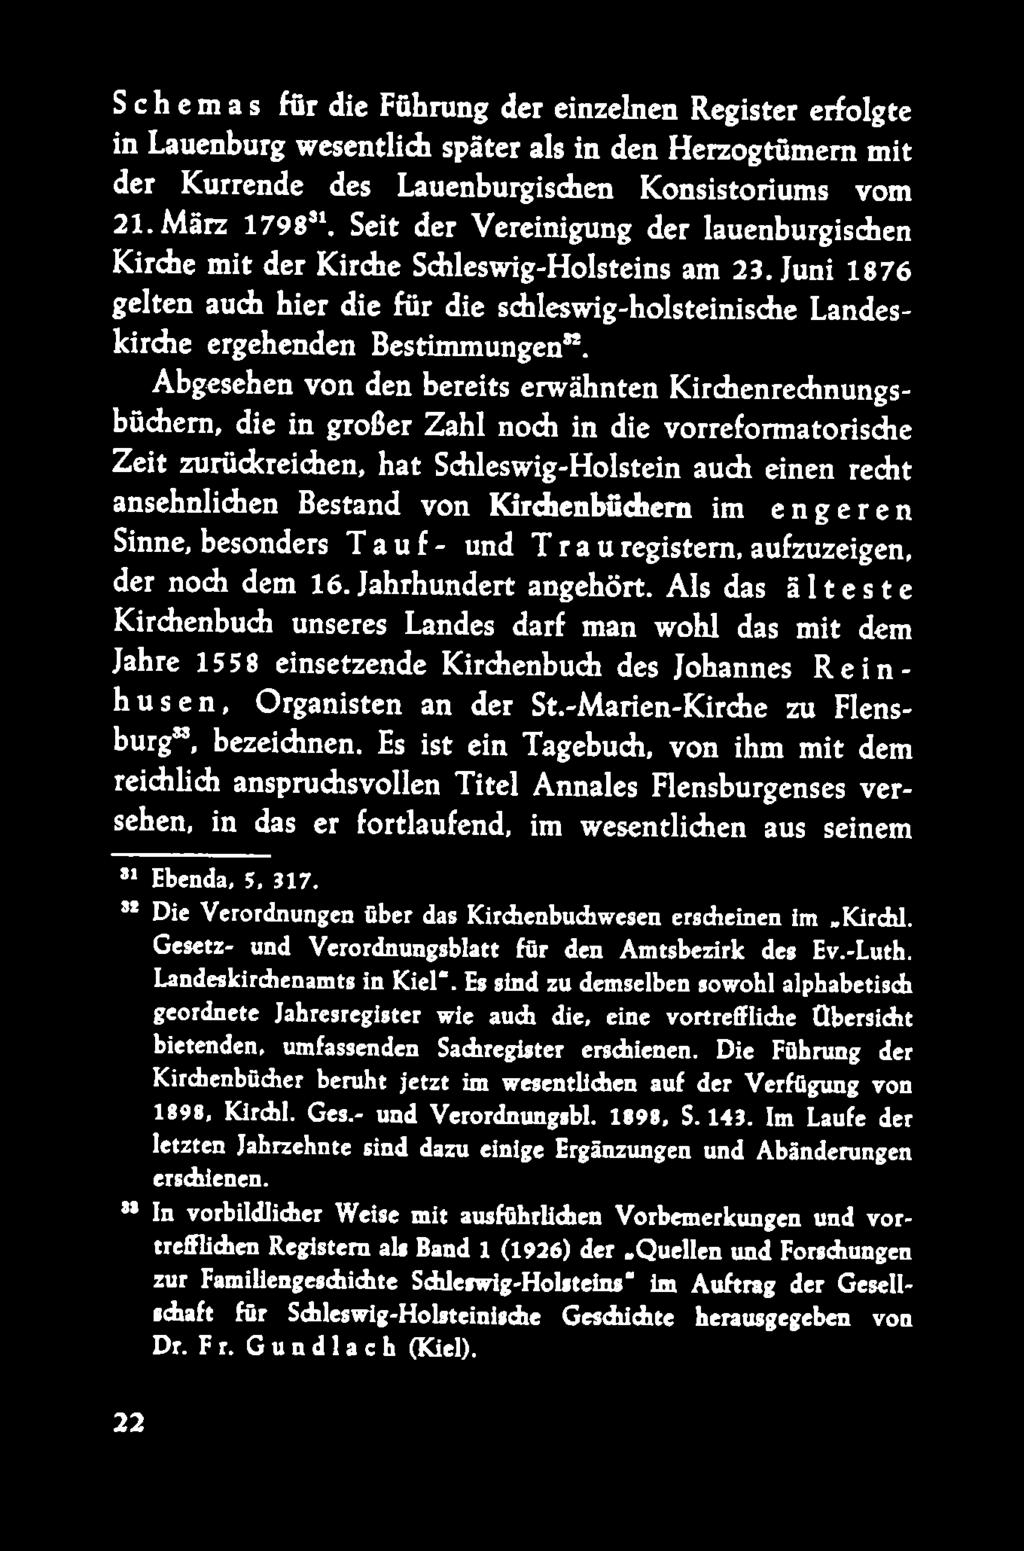 Schemas für die Führung der einzelnen Register erfolgte in Lauenburg wesentlich später als in den Herzogtümern mit der Kurrende des Lauenburgischen Konsistoriums vom 21. März 1798J1.